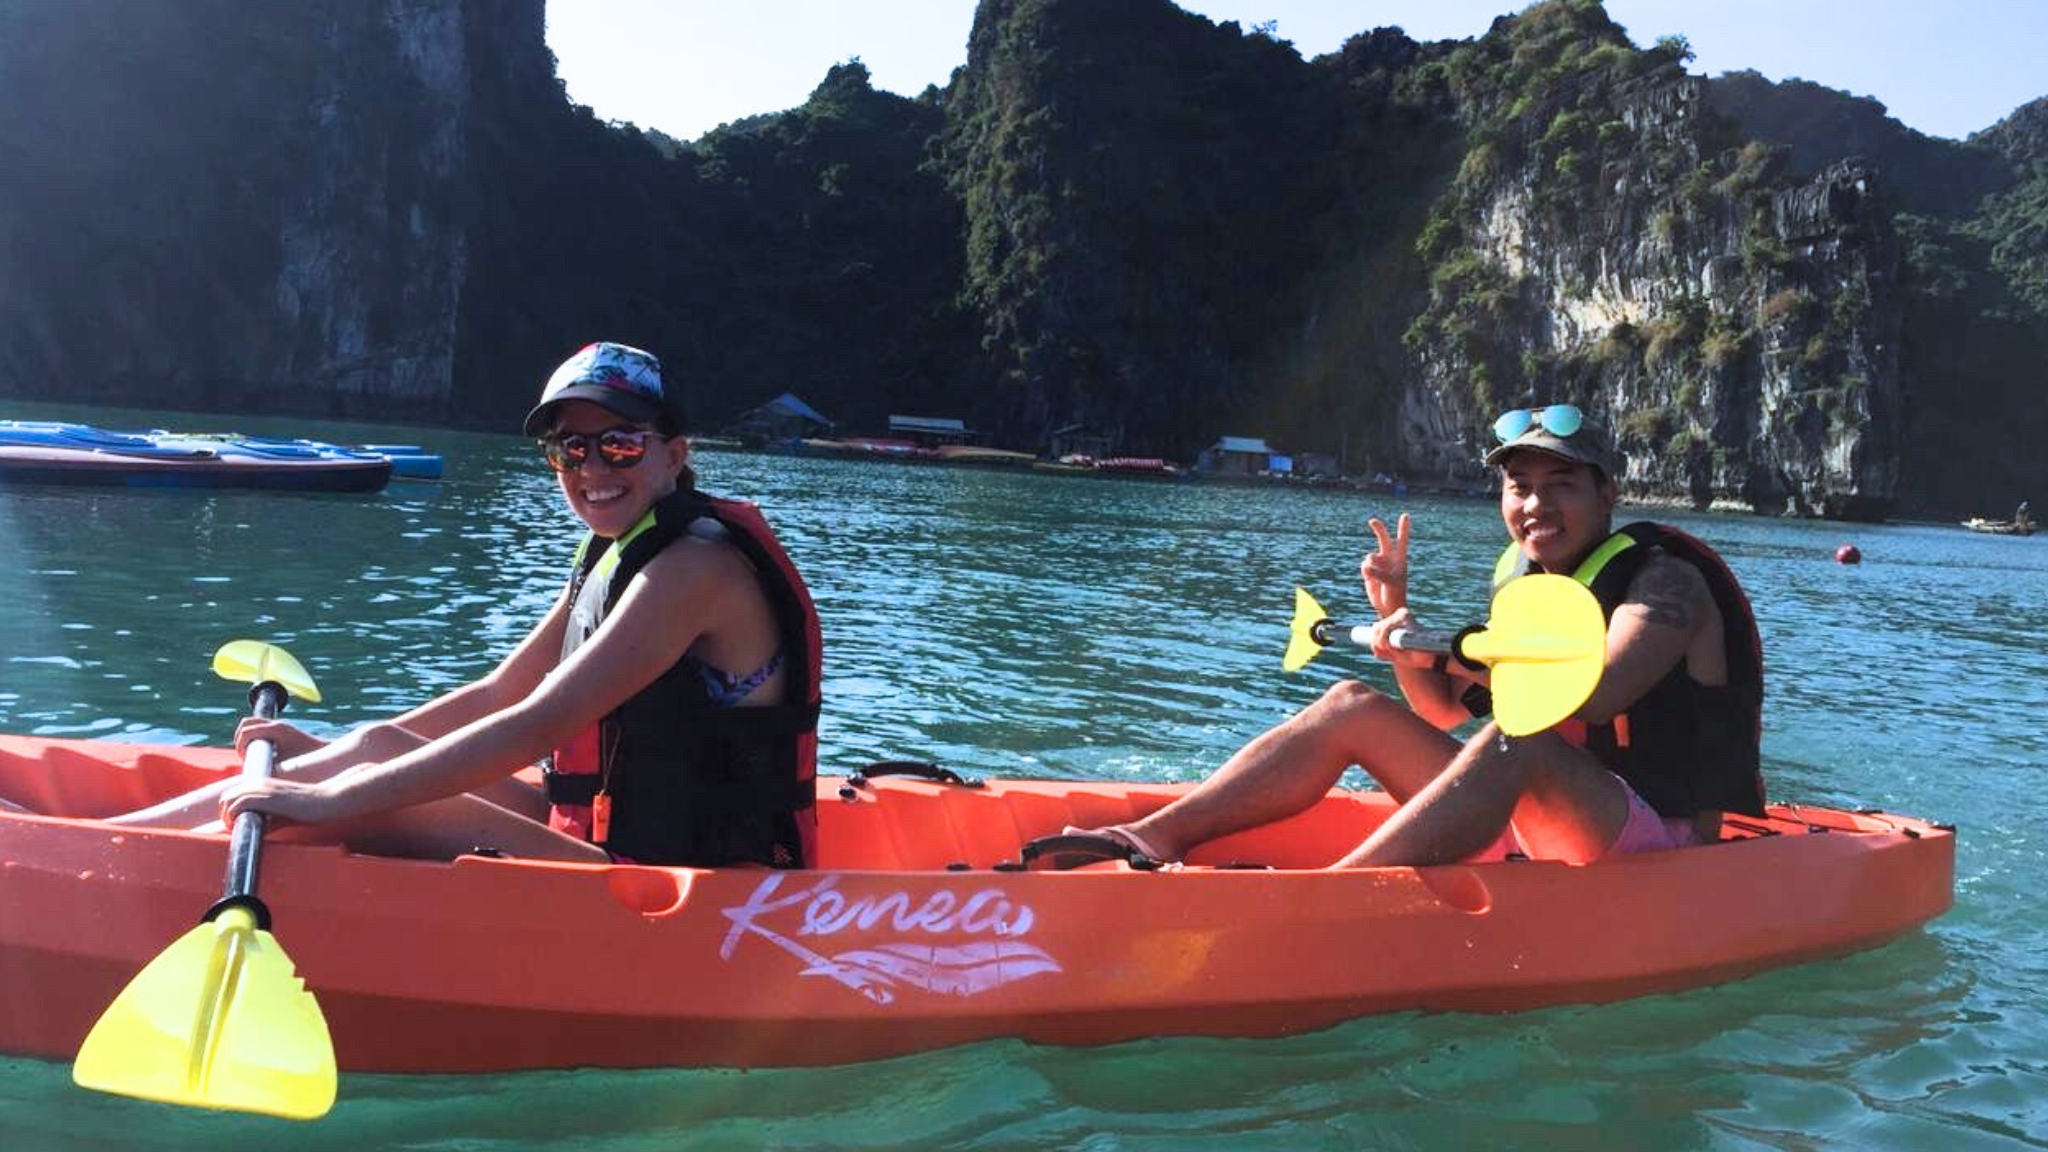 Challenge kayaking on Bai Tu Long green water